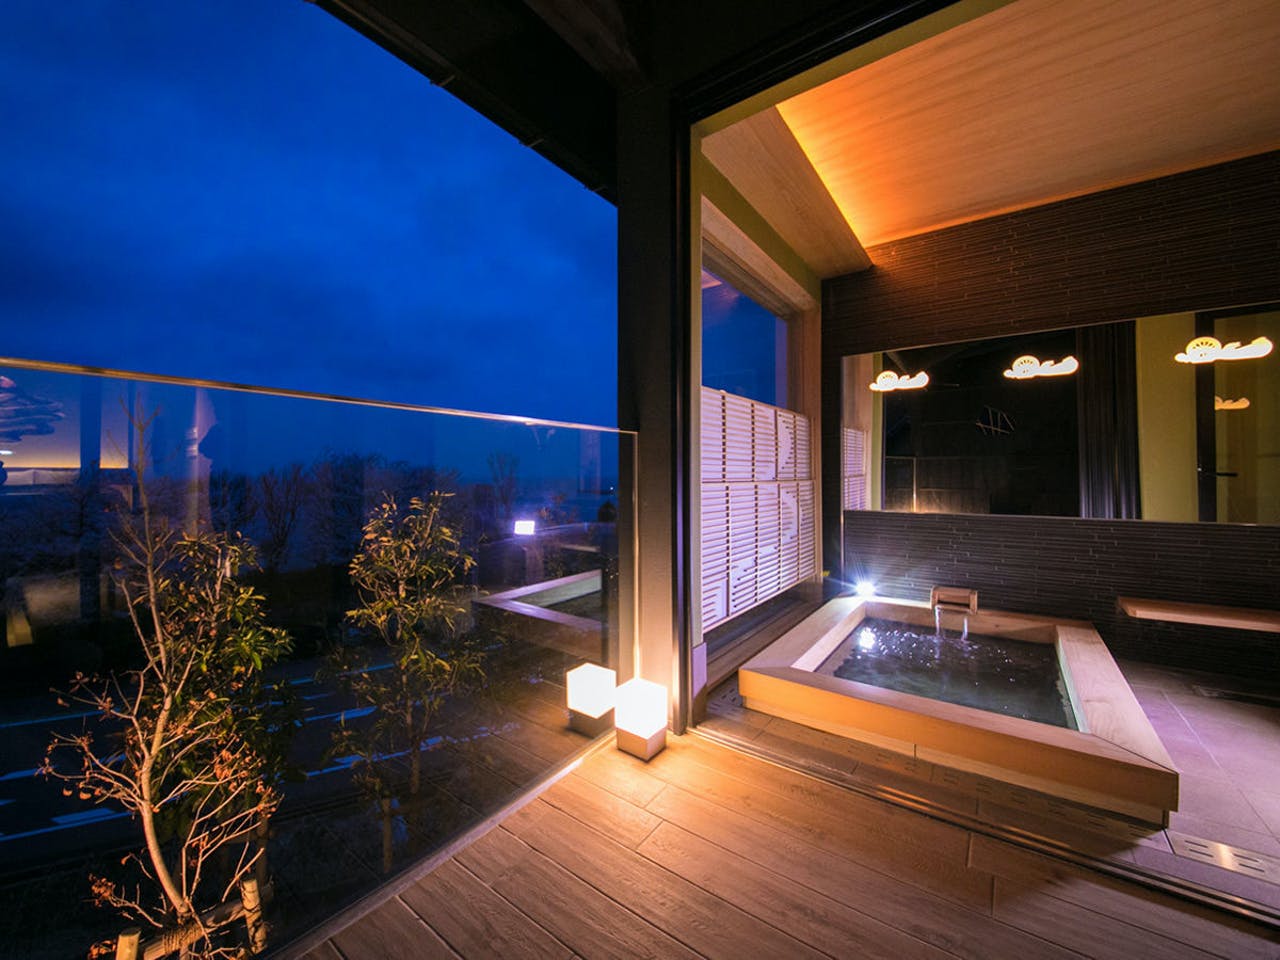 โรงแรมออนเซ็น ส่วนตัว วิวธรรมชาติ Taiza Onsen Sumihei